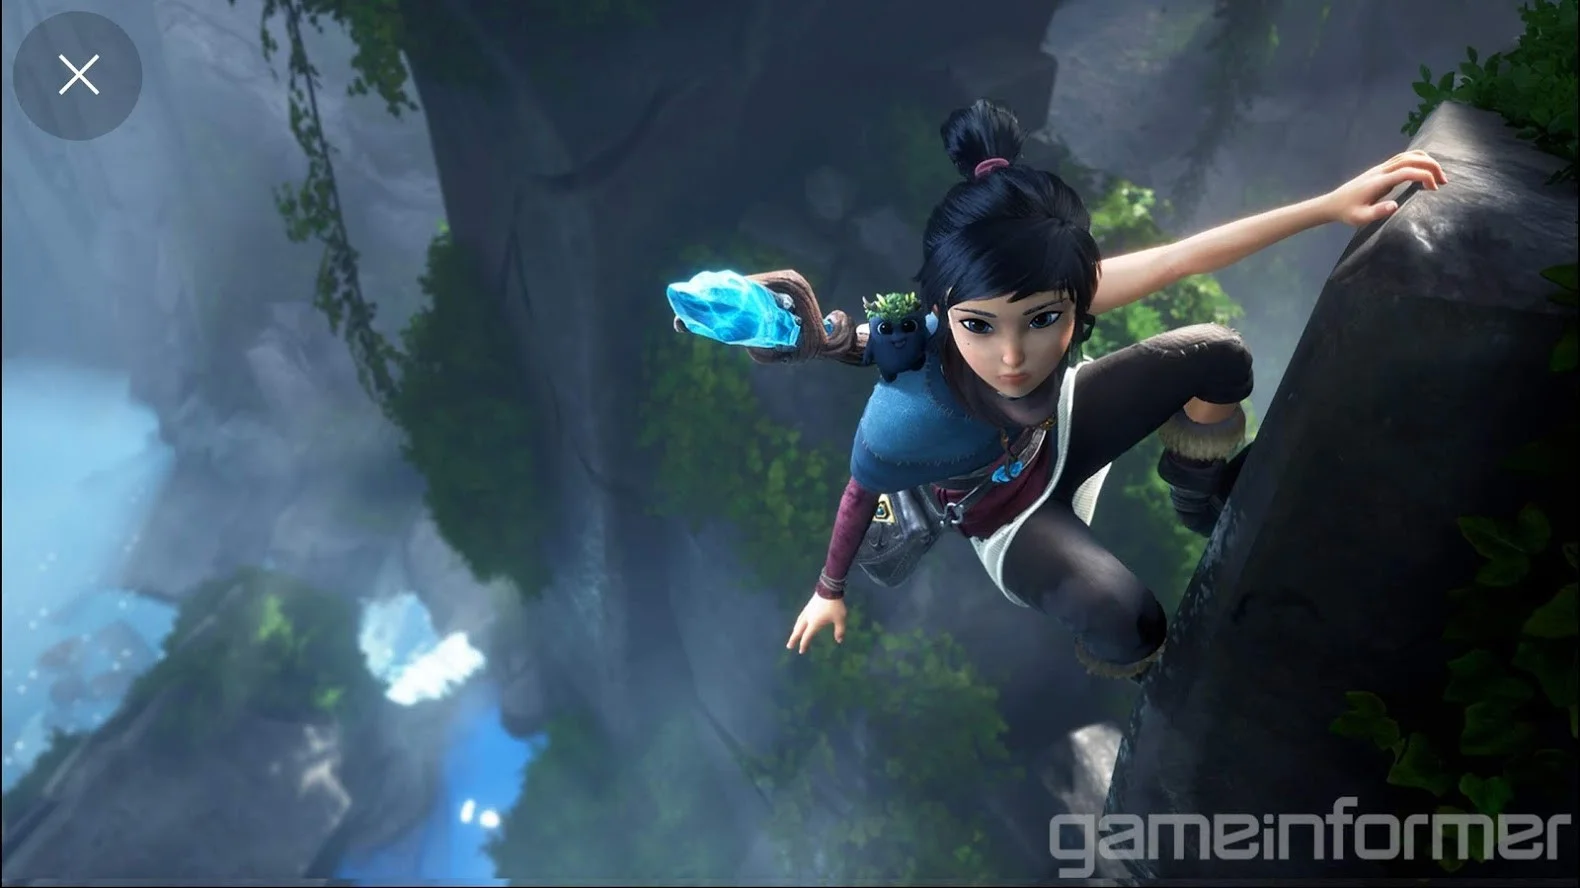 28 скриншотов Kena: Bridge of Spirits из GameInformer - фото 8